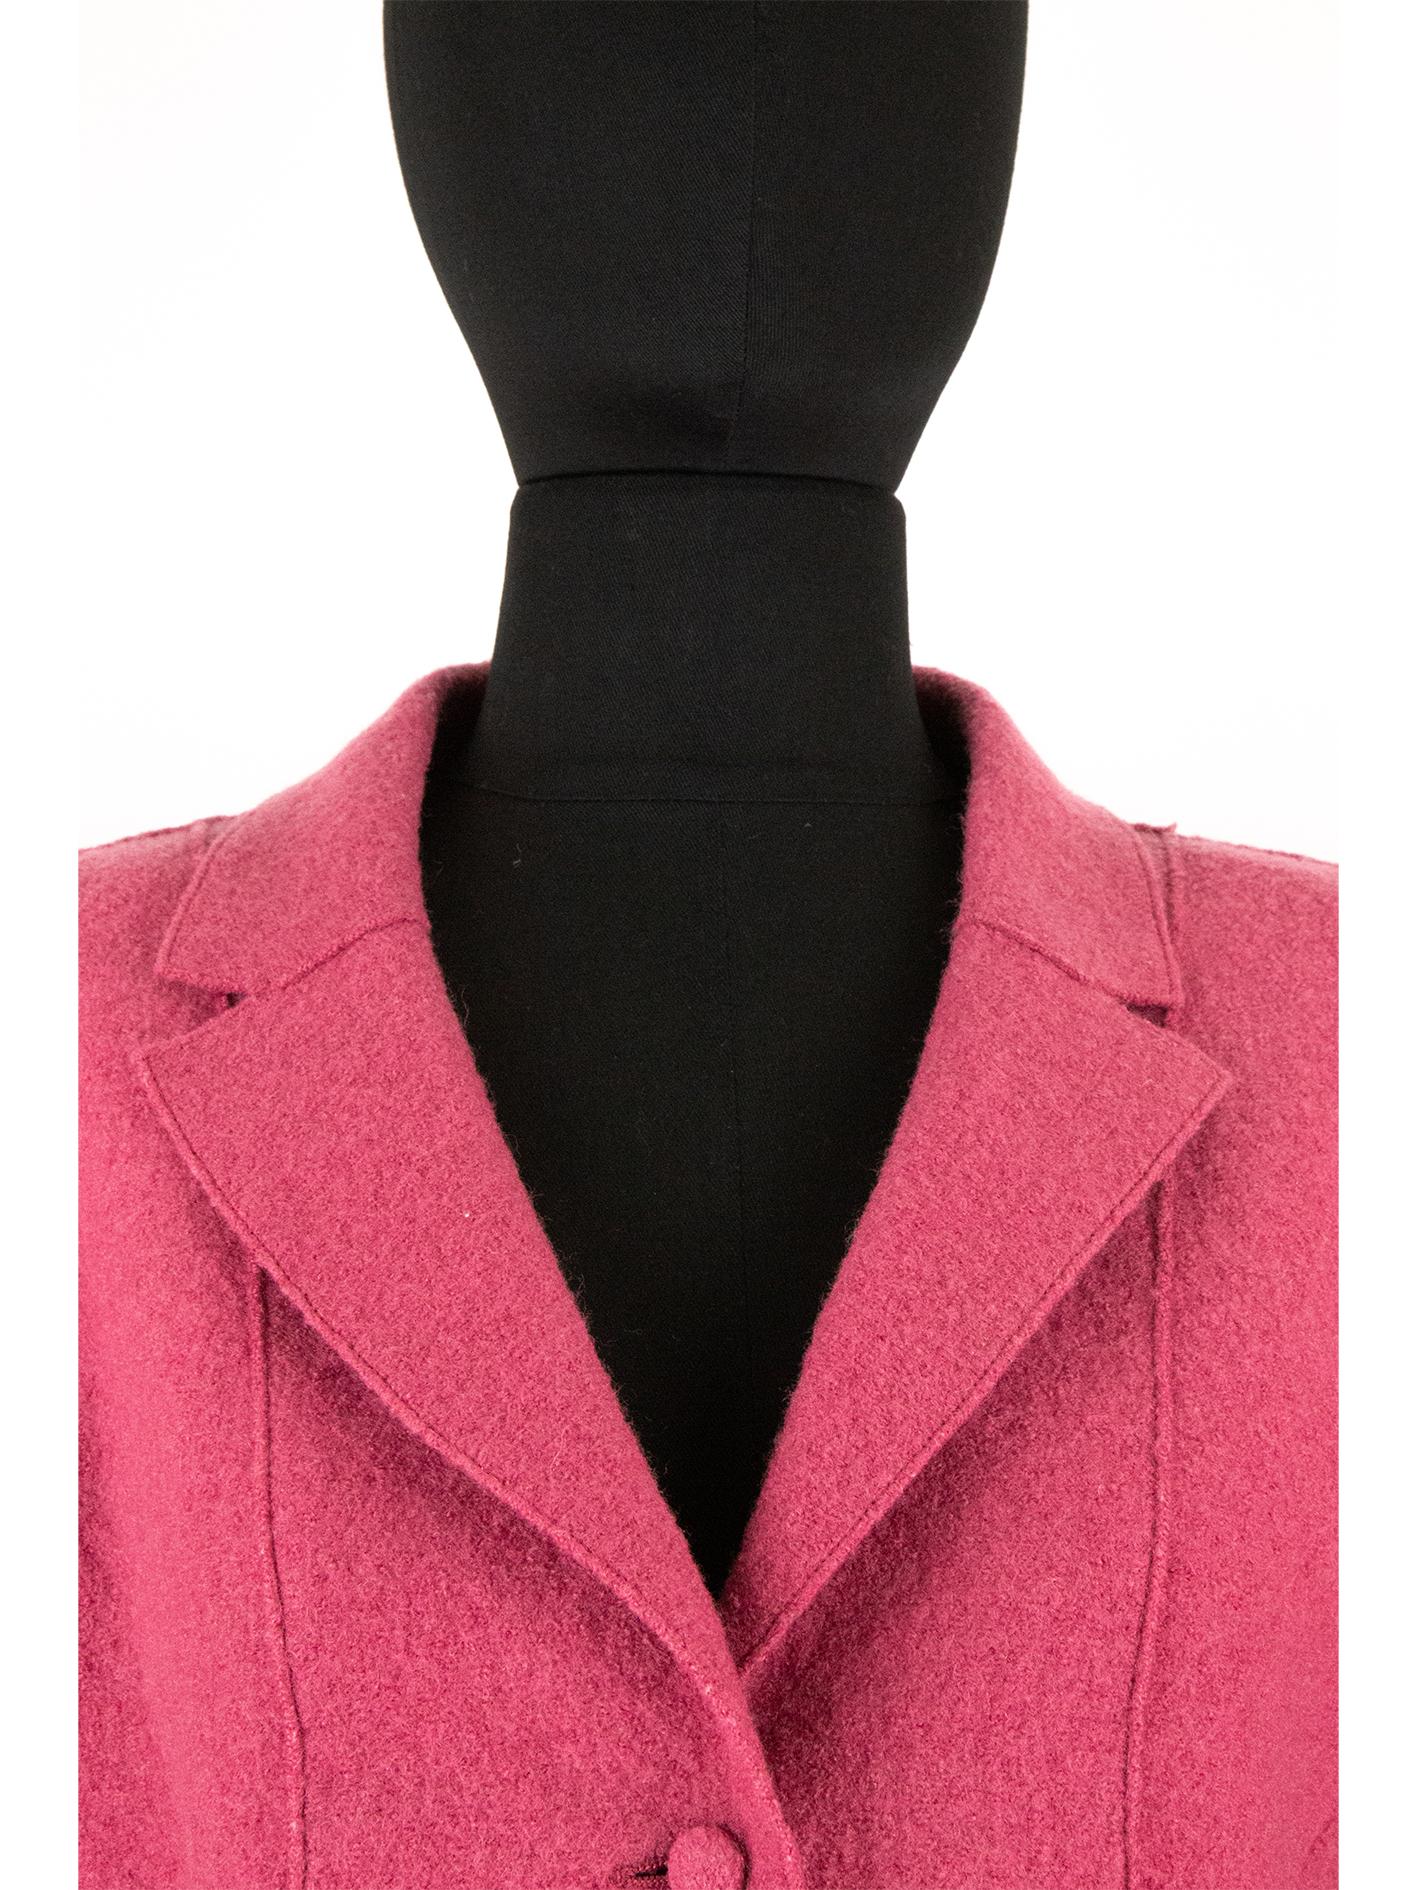 Une veste en laine bouclée Chanel des années 2000, rose punch, avec un corsage ajusté composé de coutures à pinces apparentes incurvées, créant une silhouette flatteuse sur le corps. Le corsage comprend un col à revers cranté, des poches et se ferme